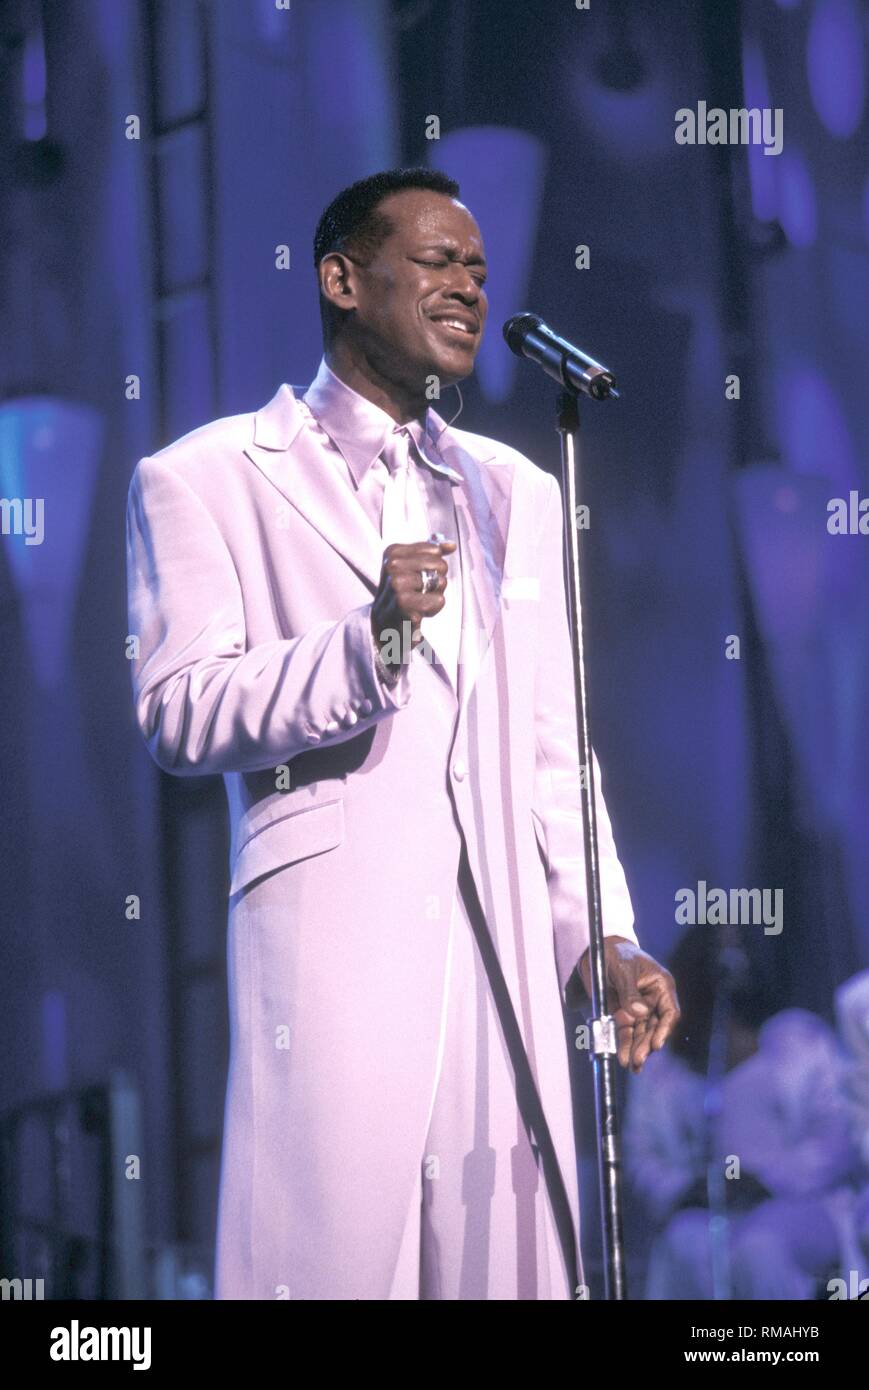 R&B et soul singer, auteur-compositeur et producteur de Luther Vandross est illustré sur la scène de la scène pendant un concert en direct de l'apparence. Banque D'Images